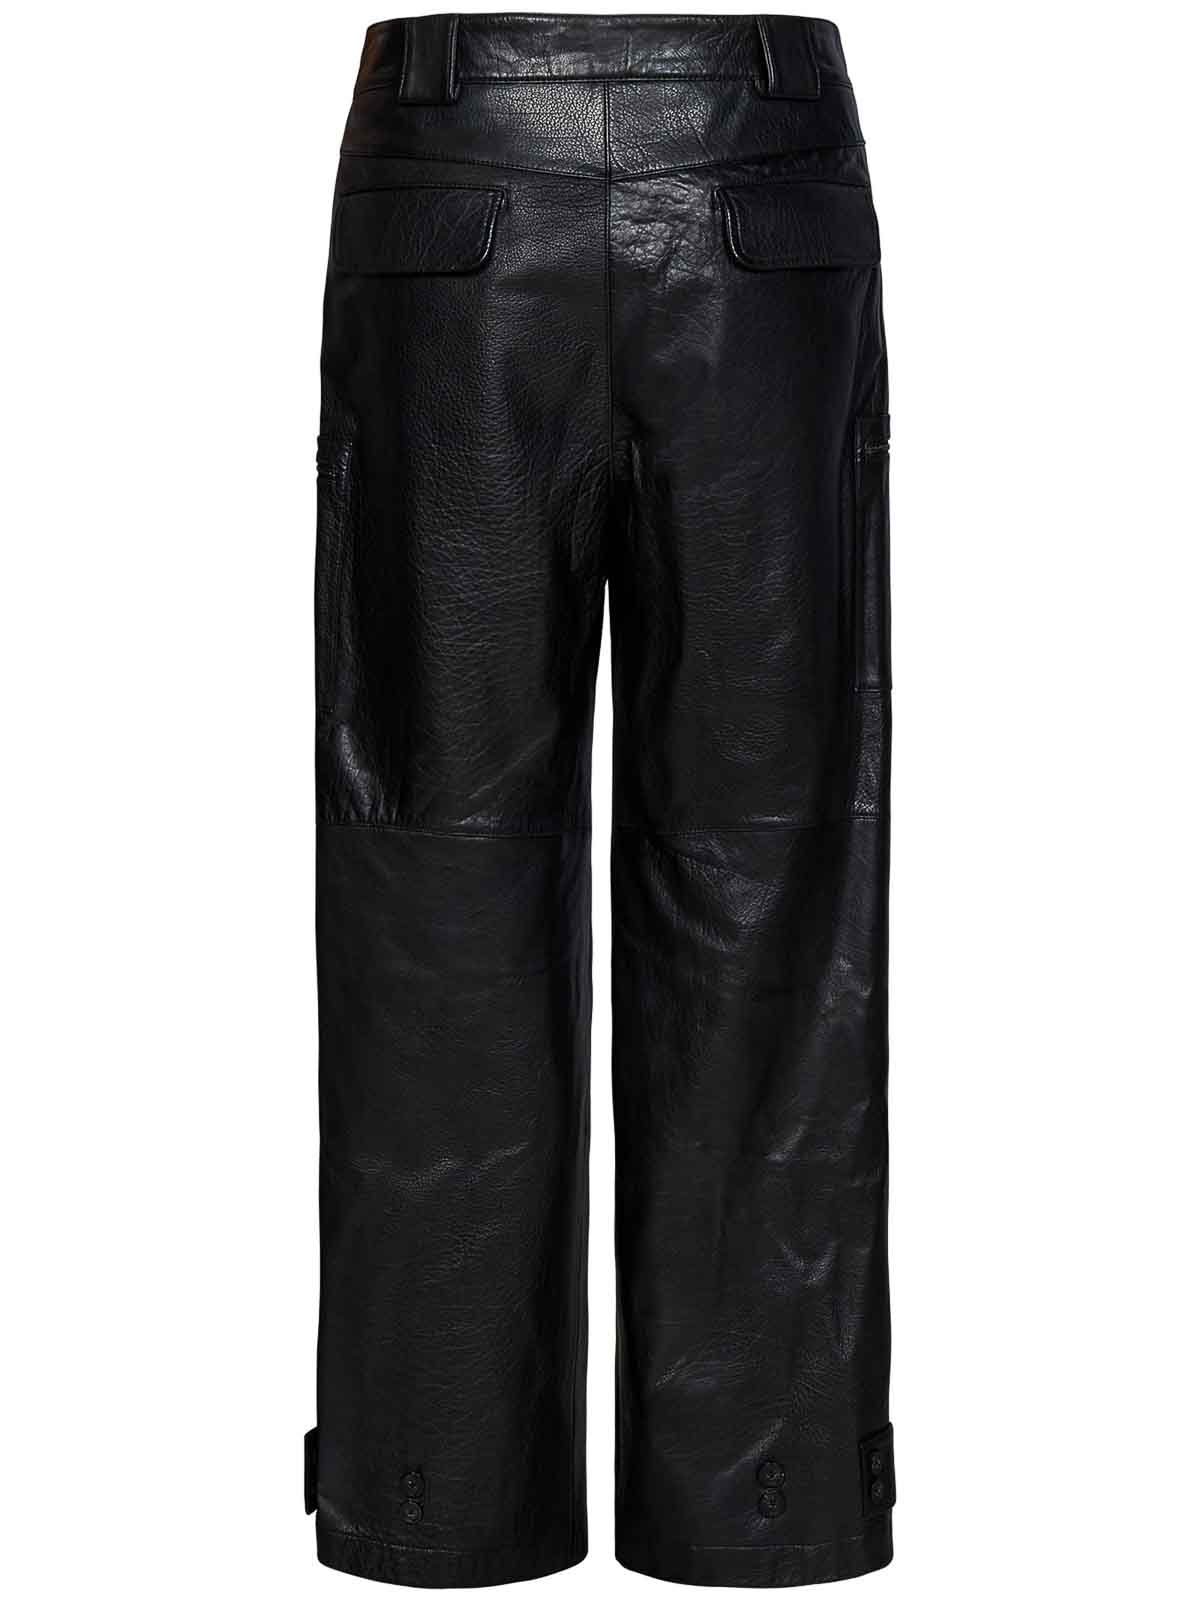 Ea7 Emporio Armani logo drawstring shorts | Men's Clothing | Balenciaga Cargo  trousers | StclaircomoShops